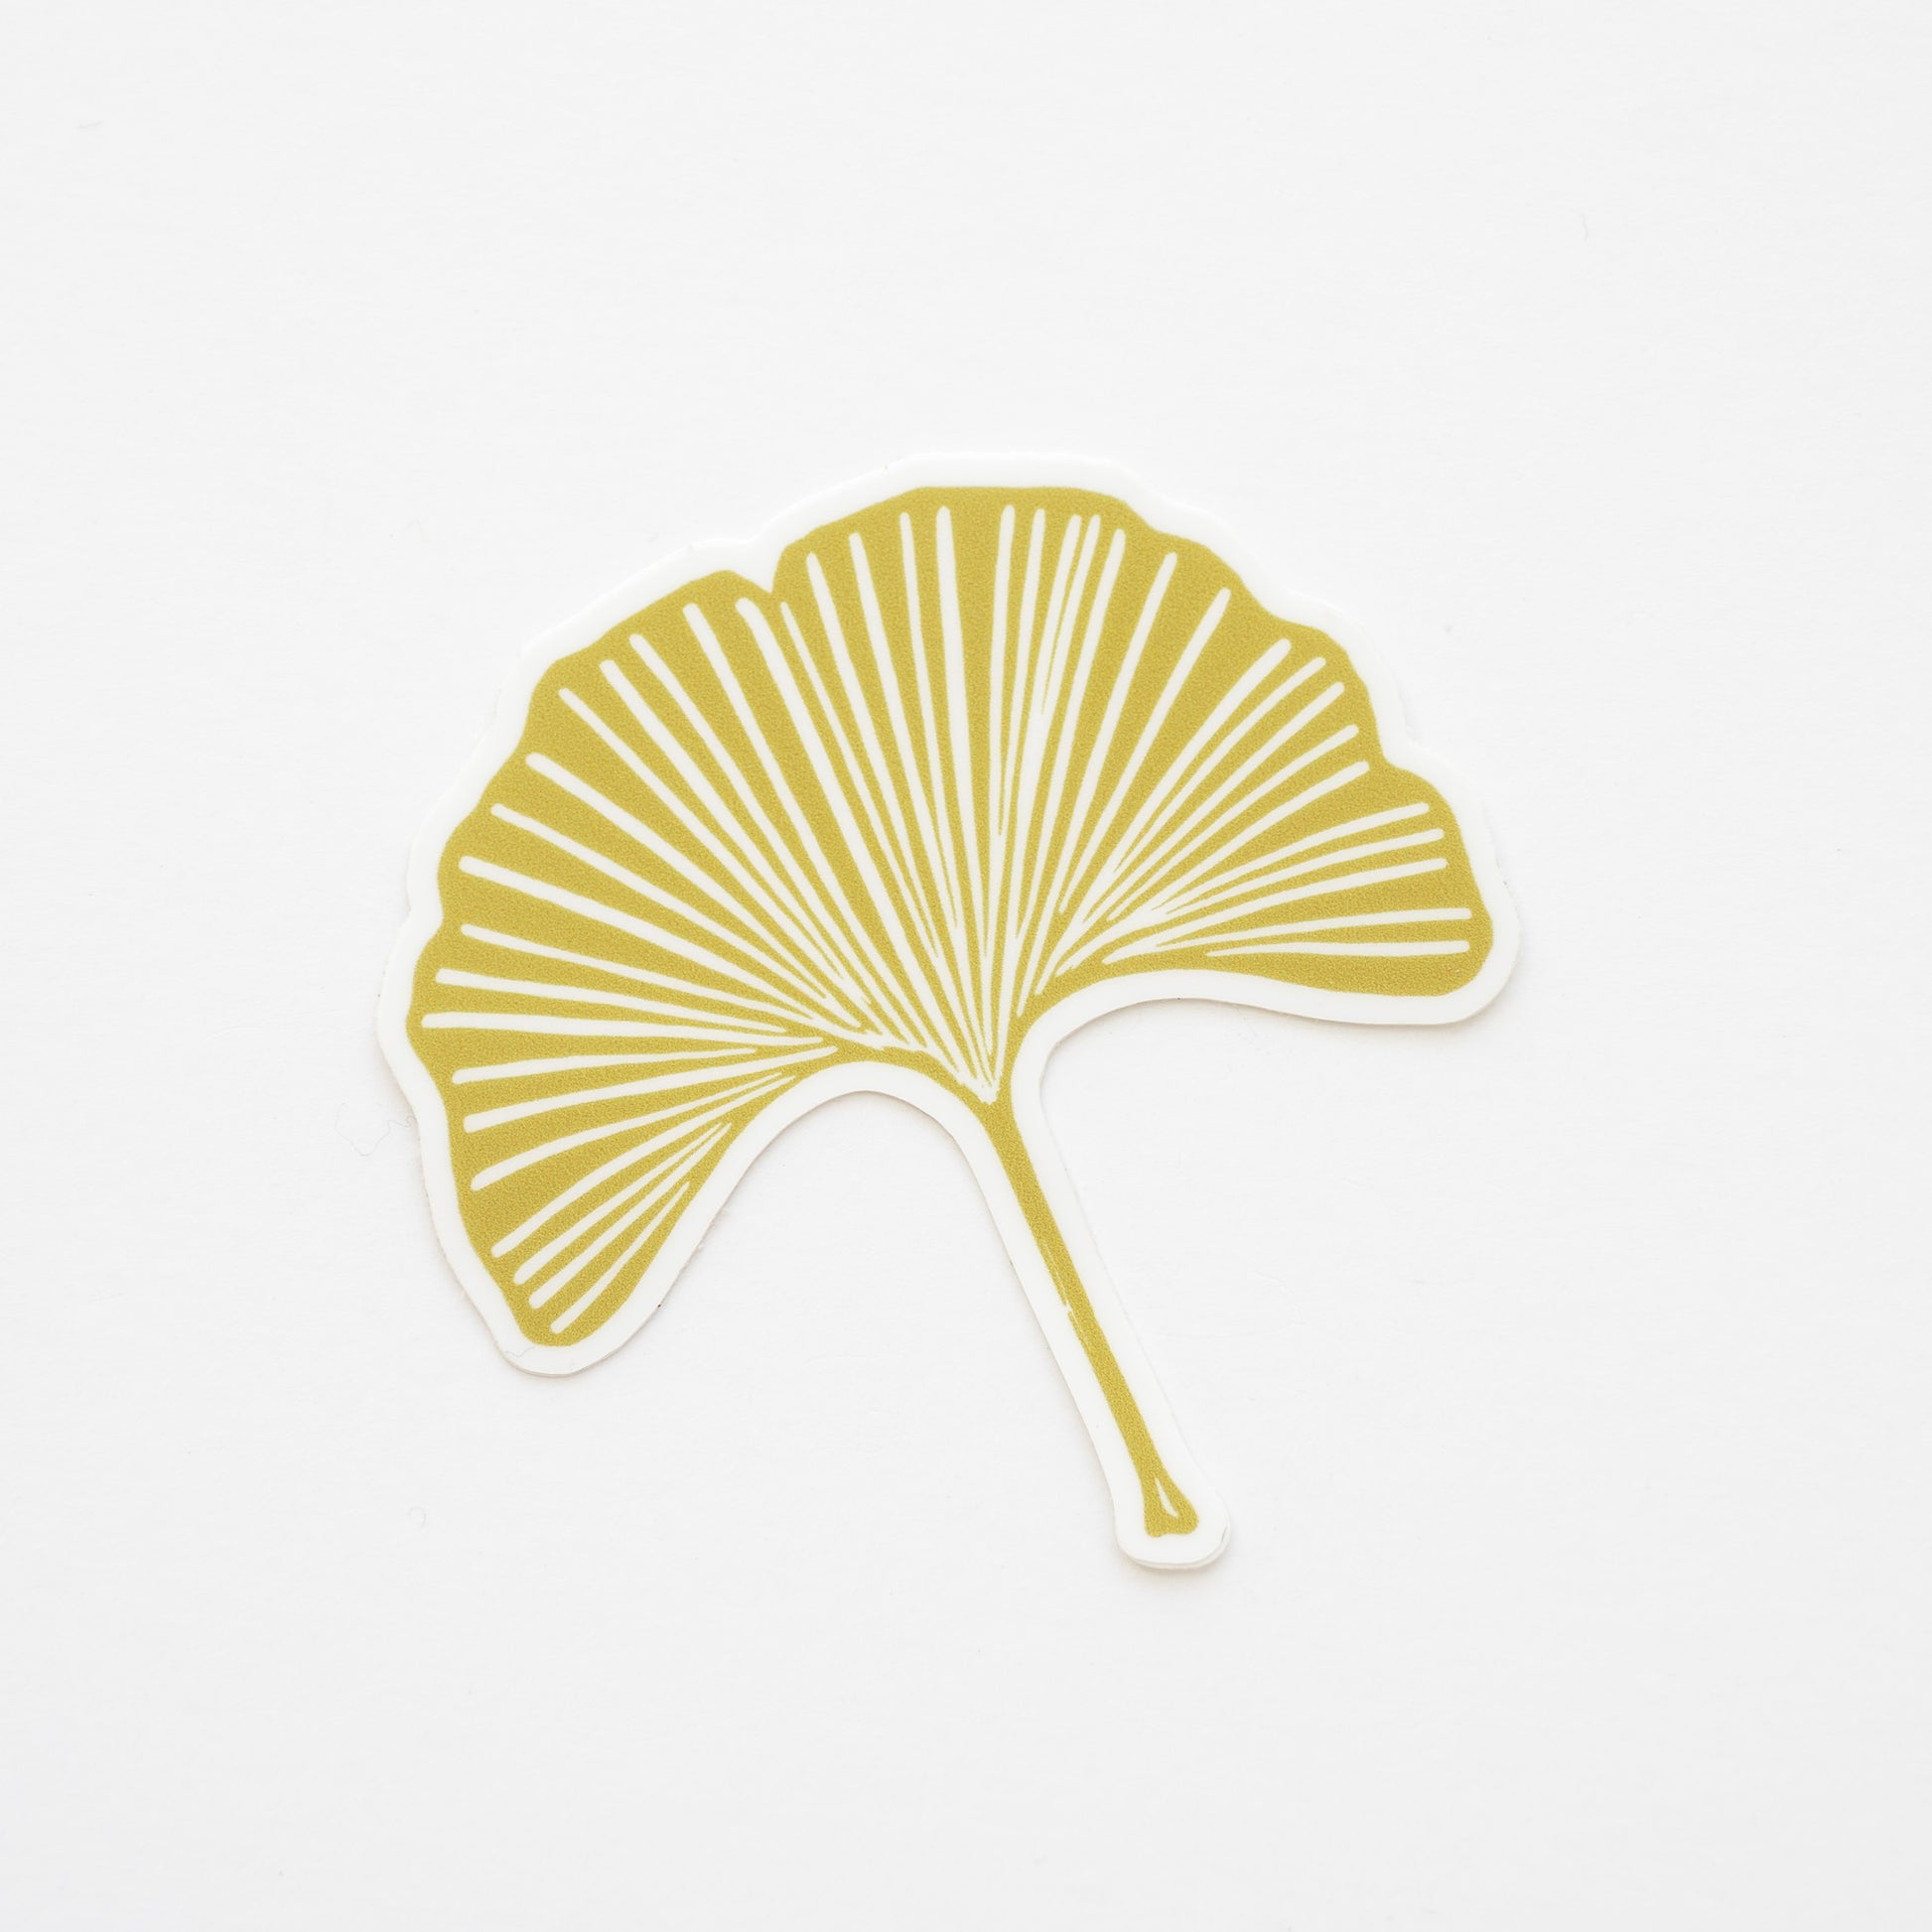 Gold vinyl ginkgo leaf sticker